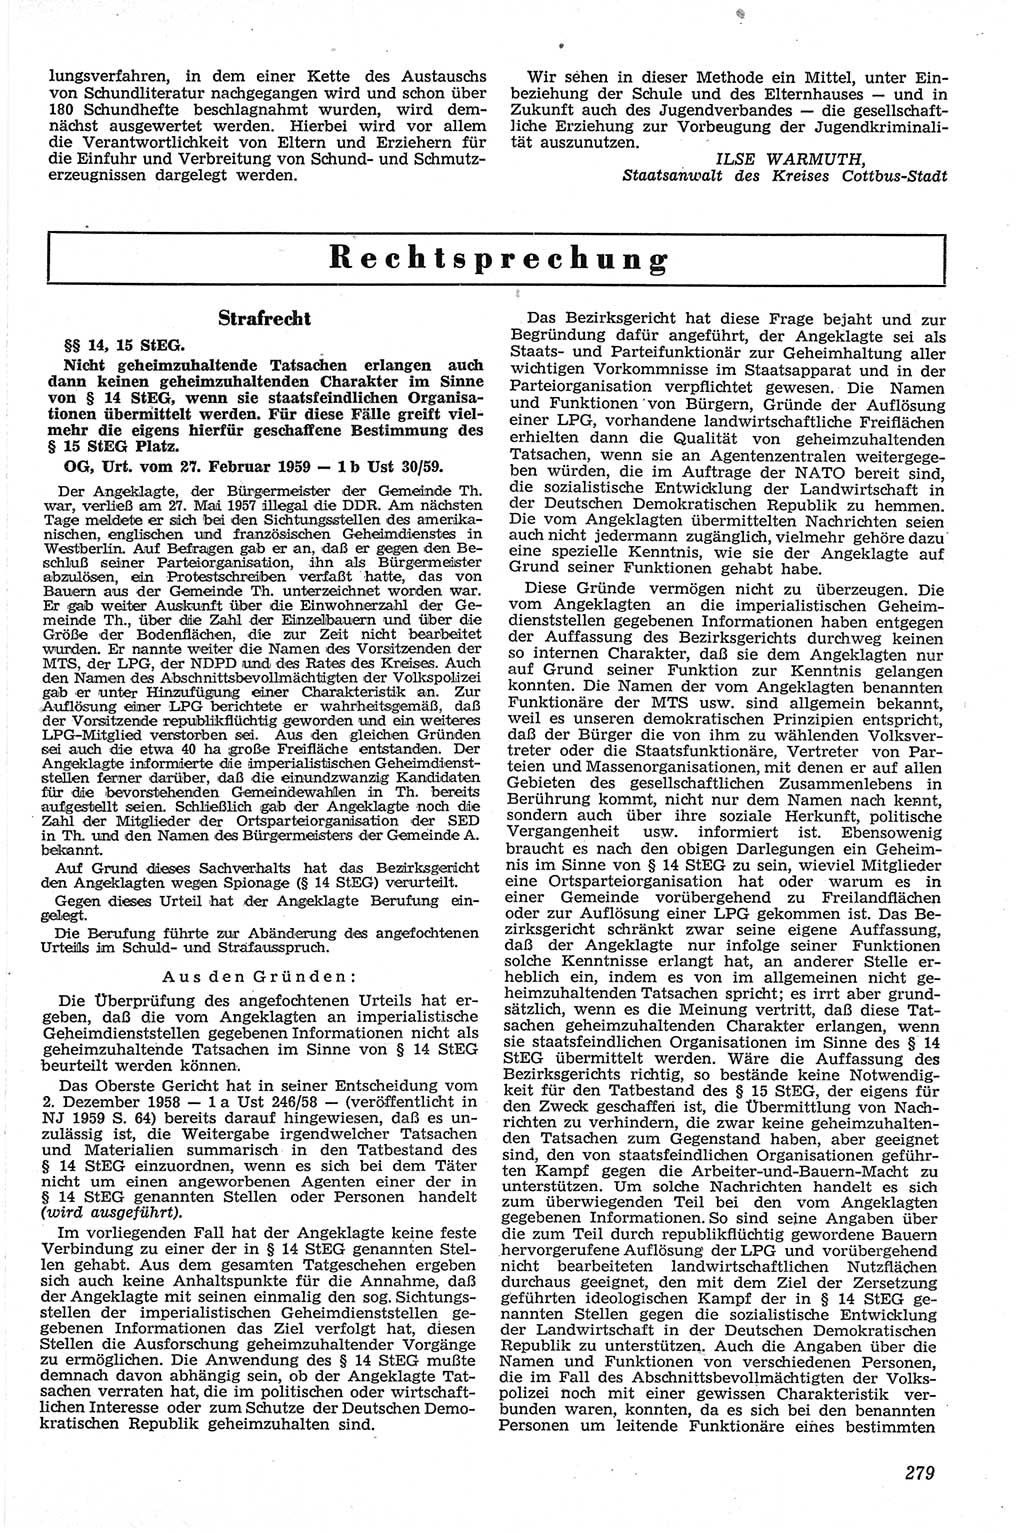 Neue Justiz (NJ), Zeitschrift für Recht und Rechtswissenschaft [Deutsche Demokratische Republik (DDR)], 13. Jahrgang 1959, Seite 279 (NJ DDR 1959, S. 279)